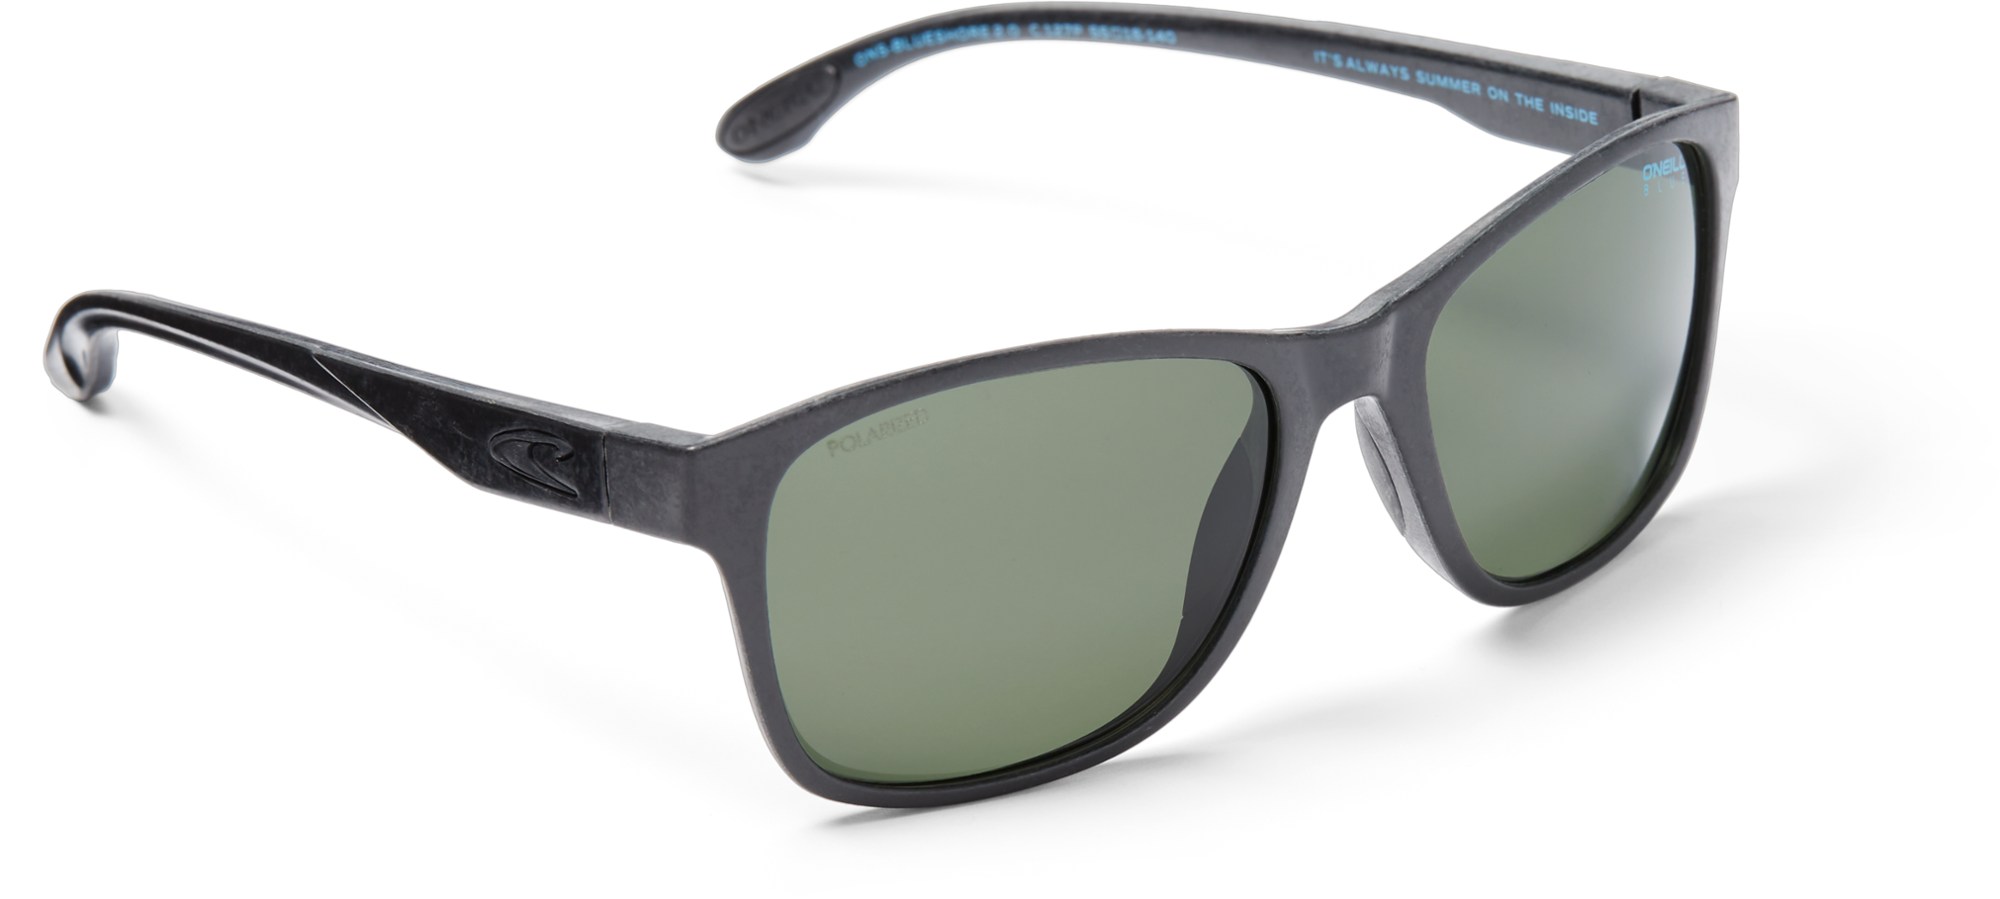 Поляризованные солнцезащитные очки Blueshore O'NEILL Sunglasses, черный